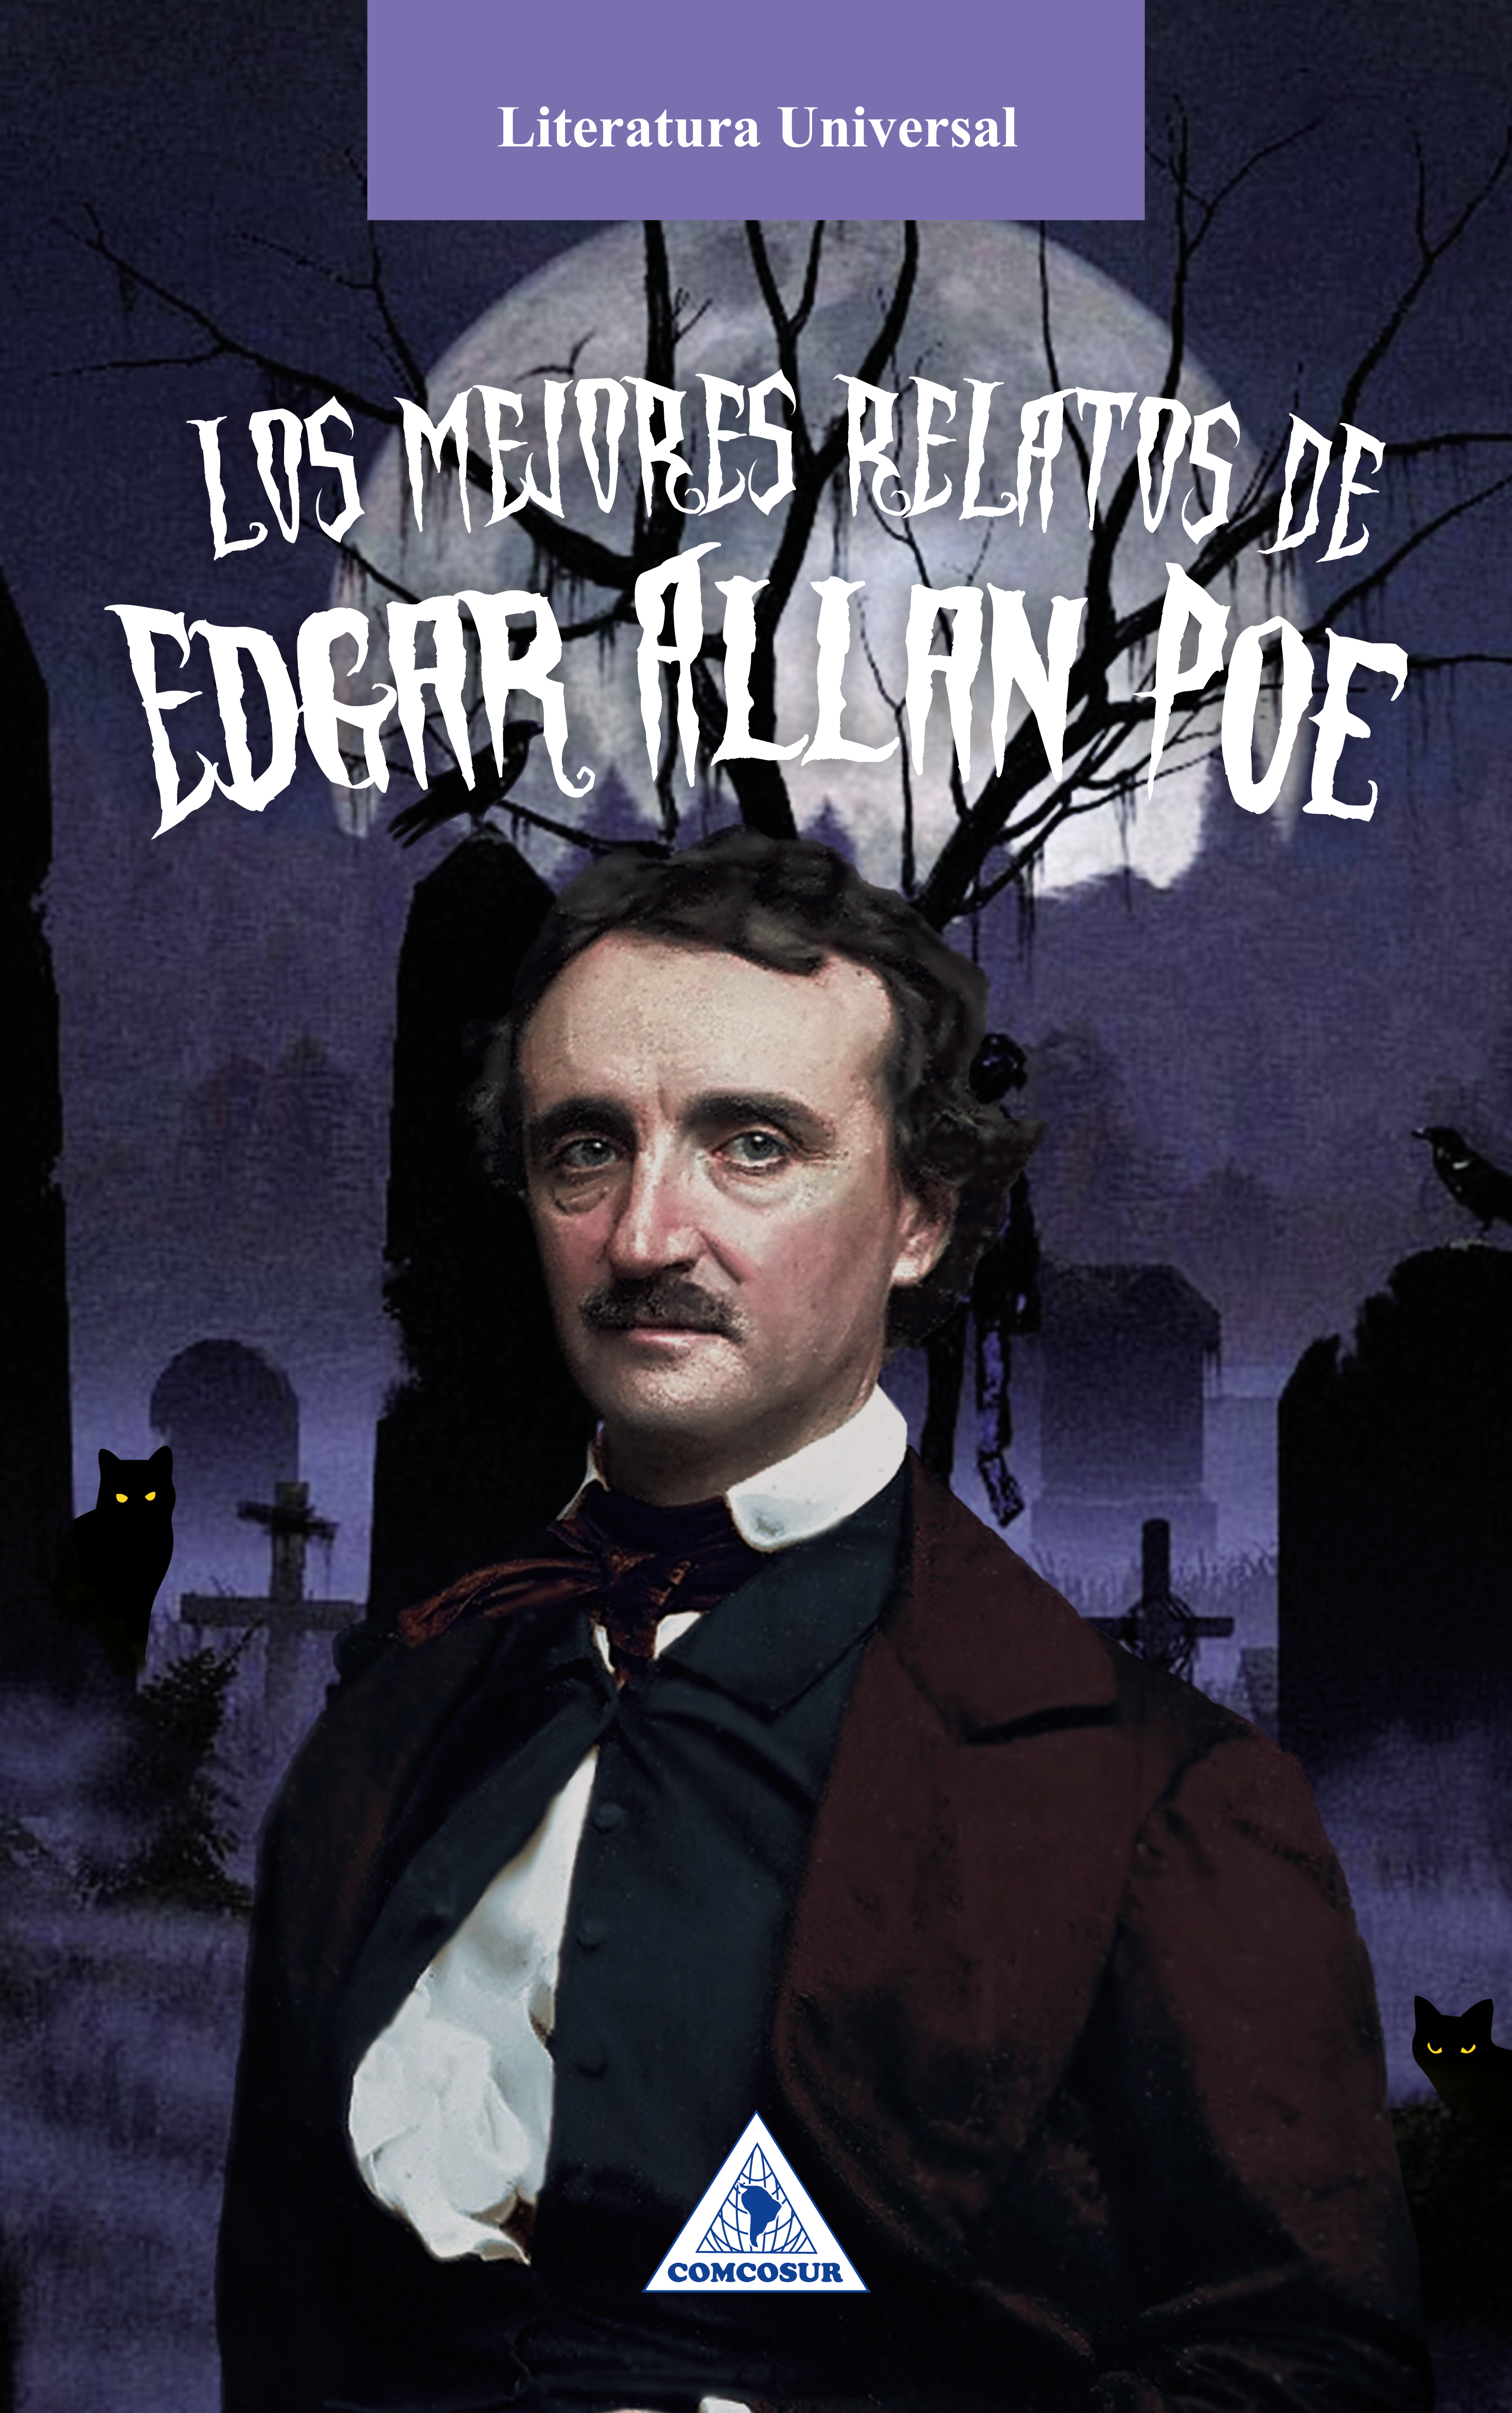 Los mejores relatos de Edgar Allan Poe